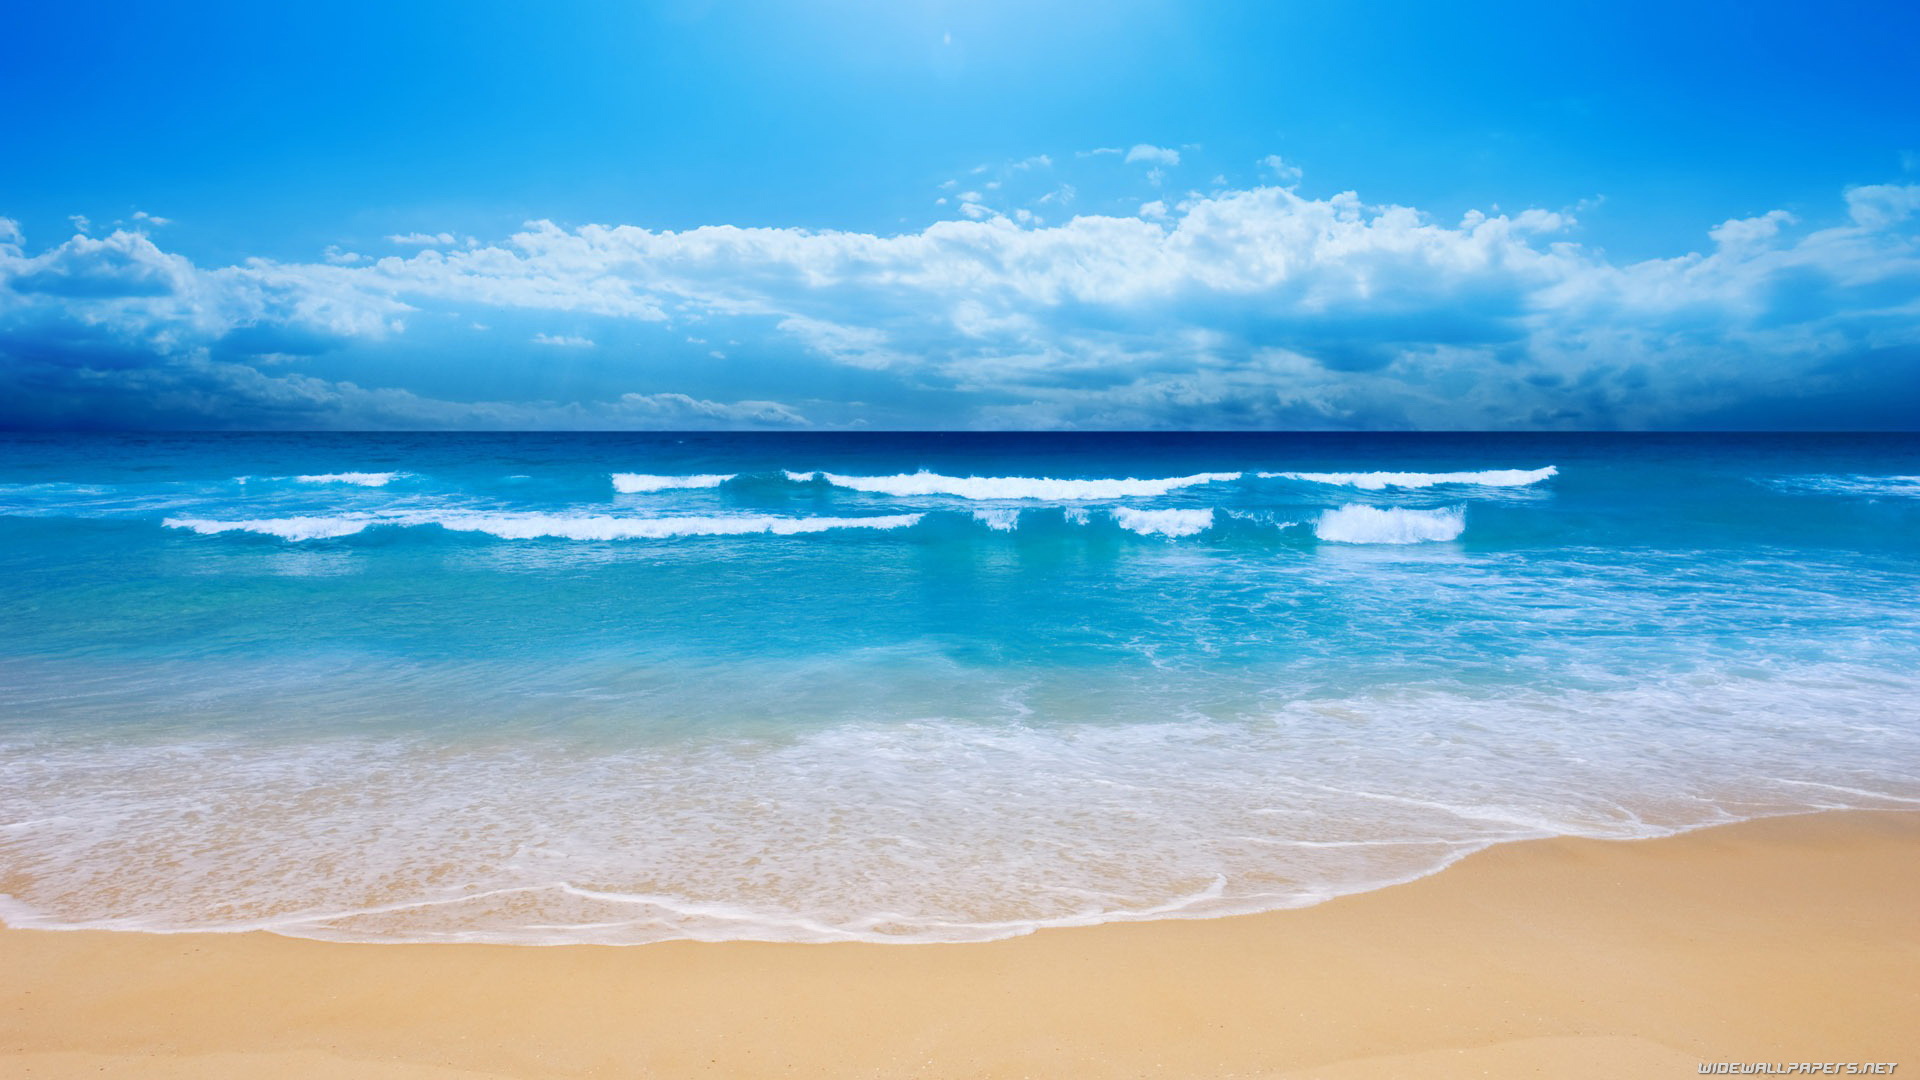 Một bãi biển tuyệt đẹp, với bãi cát và nước biển trong xanh hòa quyện với nhau. Đây là một thiên đường nghỉ dưỡng giữa mùa hè nóng bức. Đến với hình ảnh này, bạn sẽ cảm thấy nhẹ nhõm và thư giãn hơn bao giờ hết.